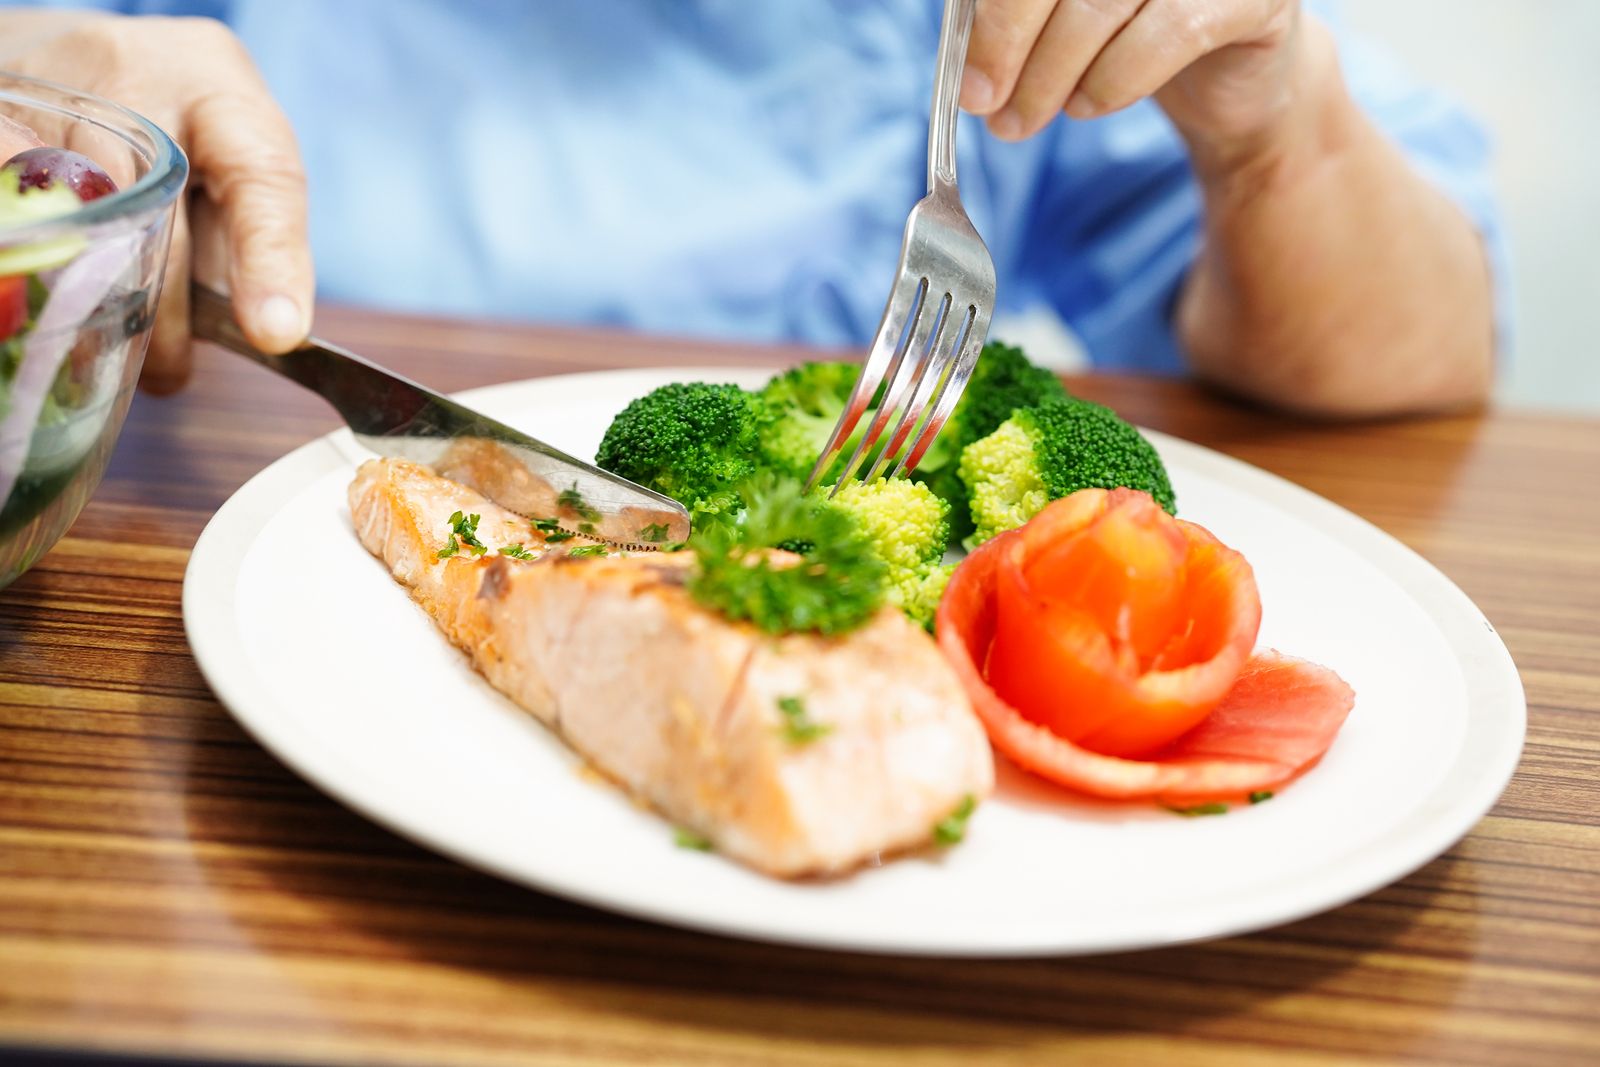 Dieta para ganar un peso saludable